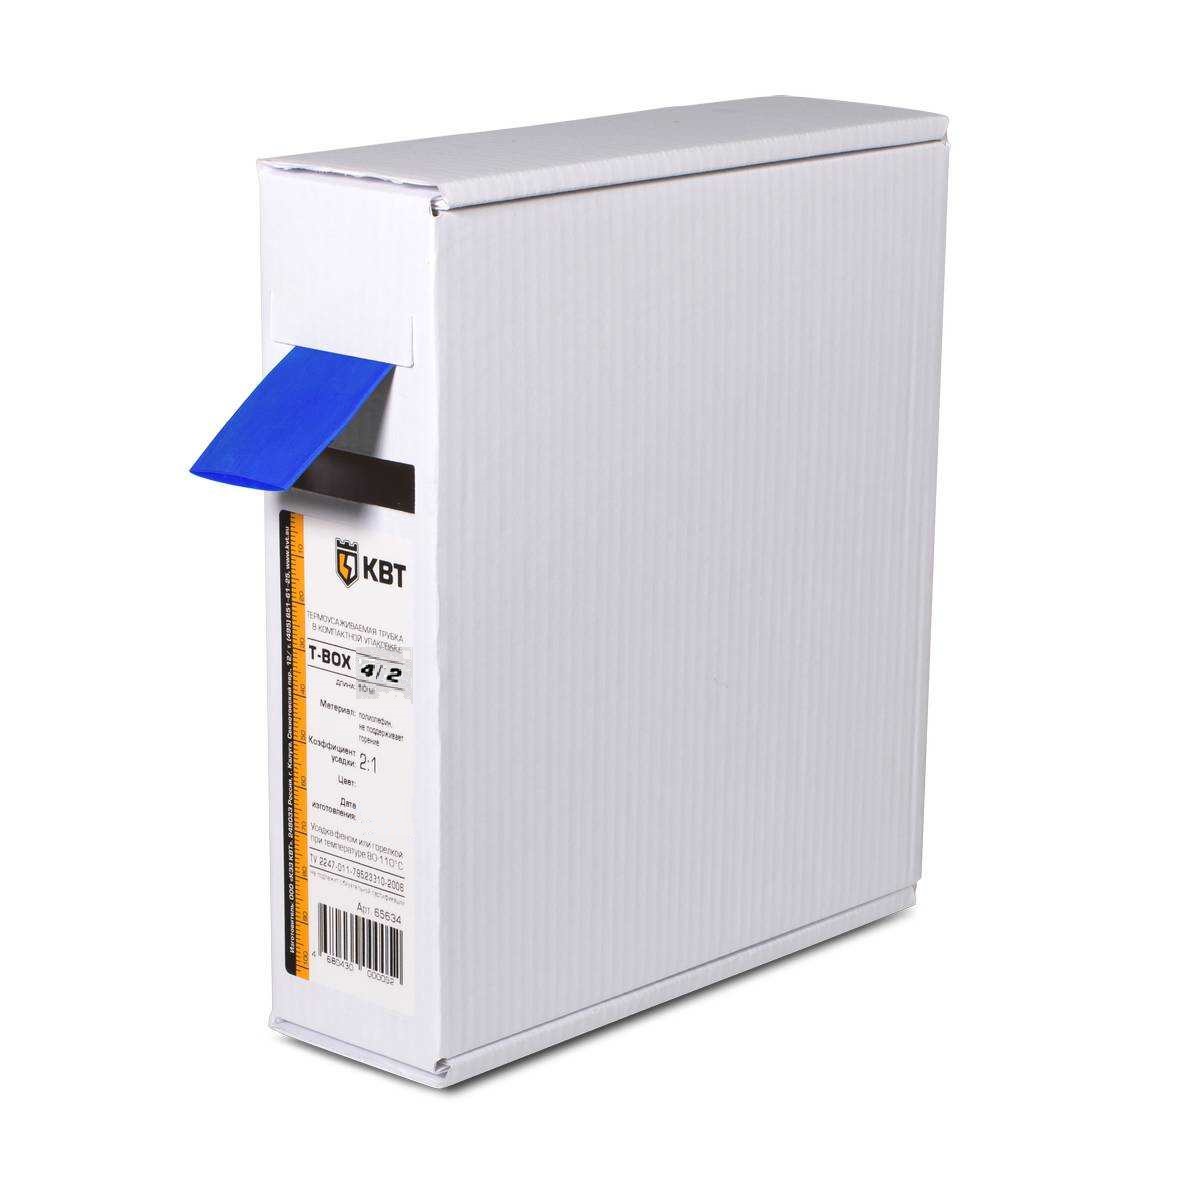 Т-BOX-4/2 (син), Трубка термоусадочная цветная в упаковке T-Box